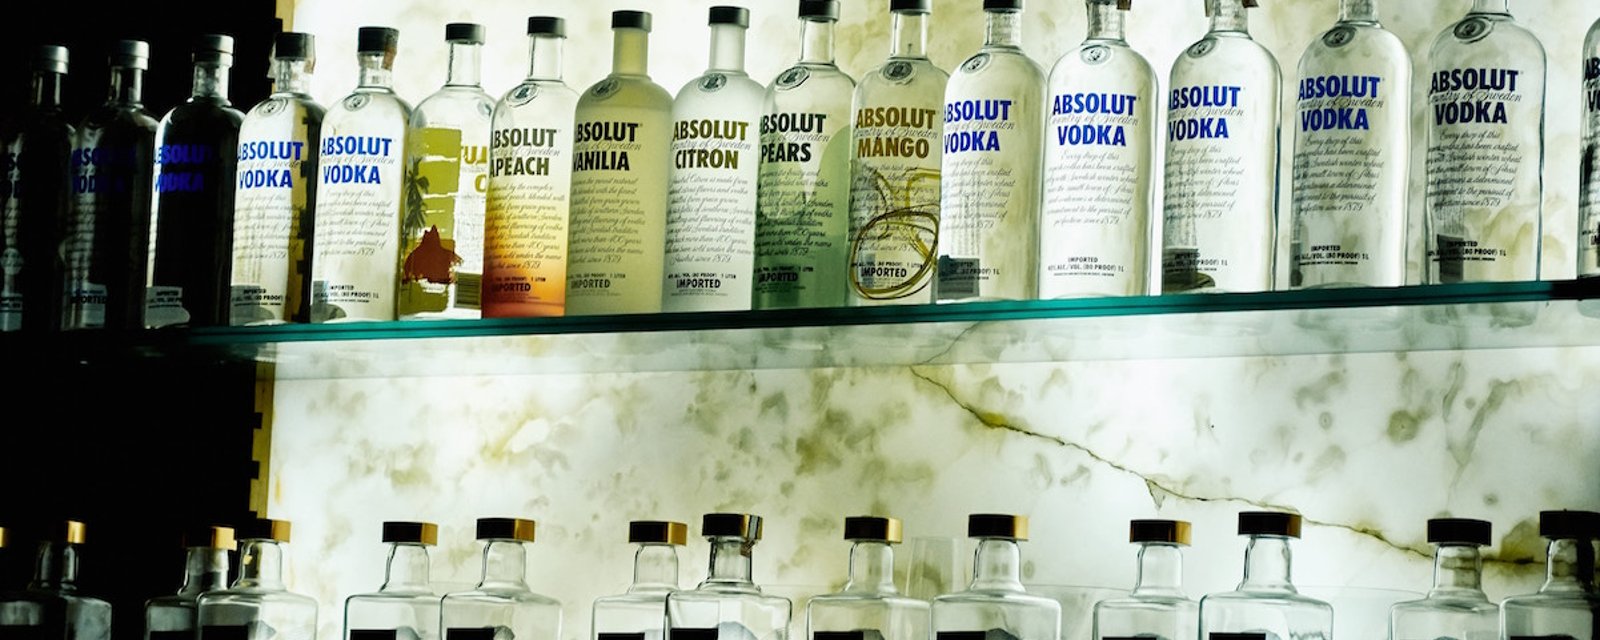 10 utilisations méconnues de la vodka (qui ne saouleront personne!)